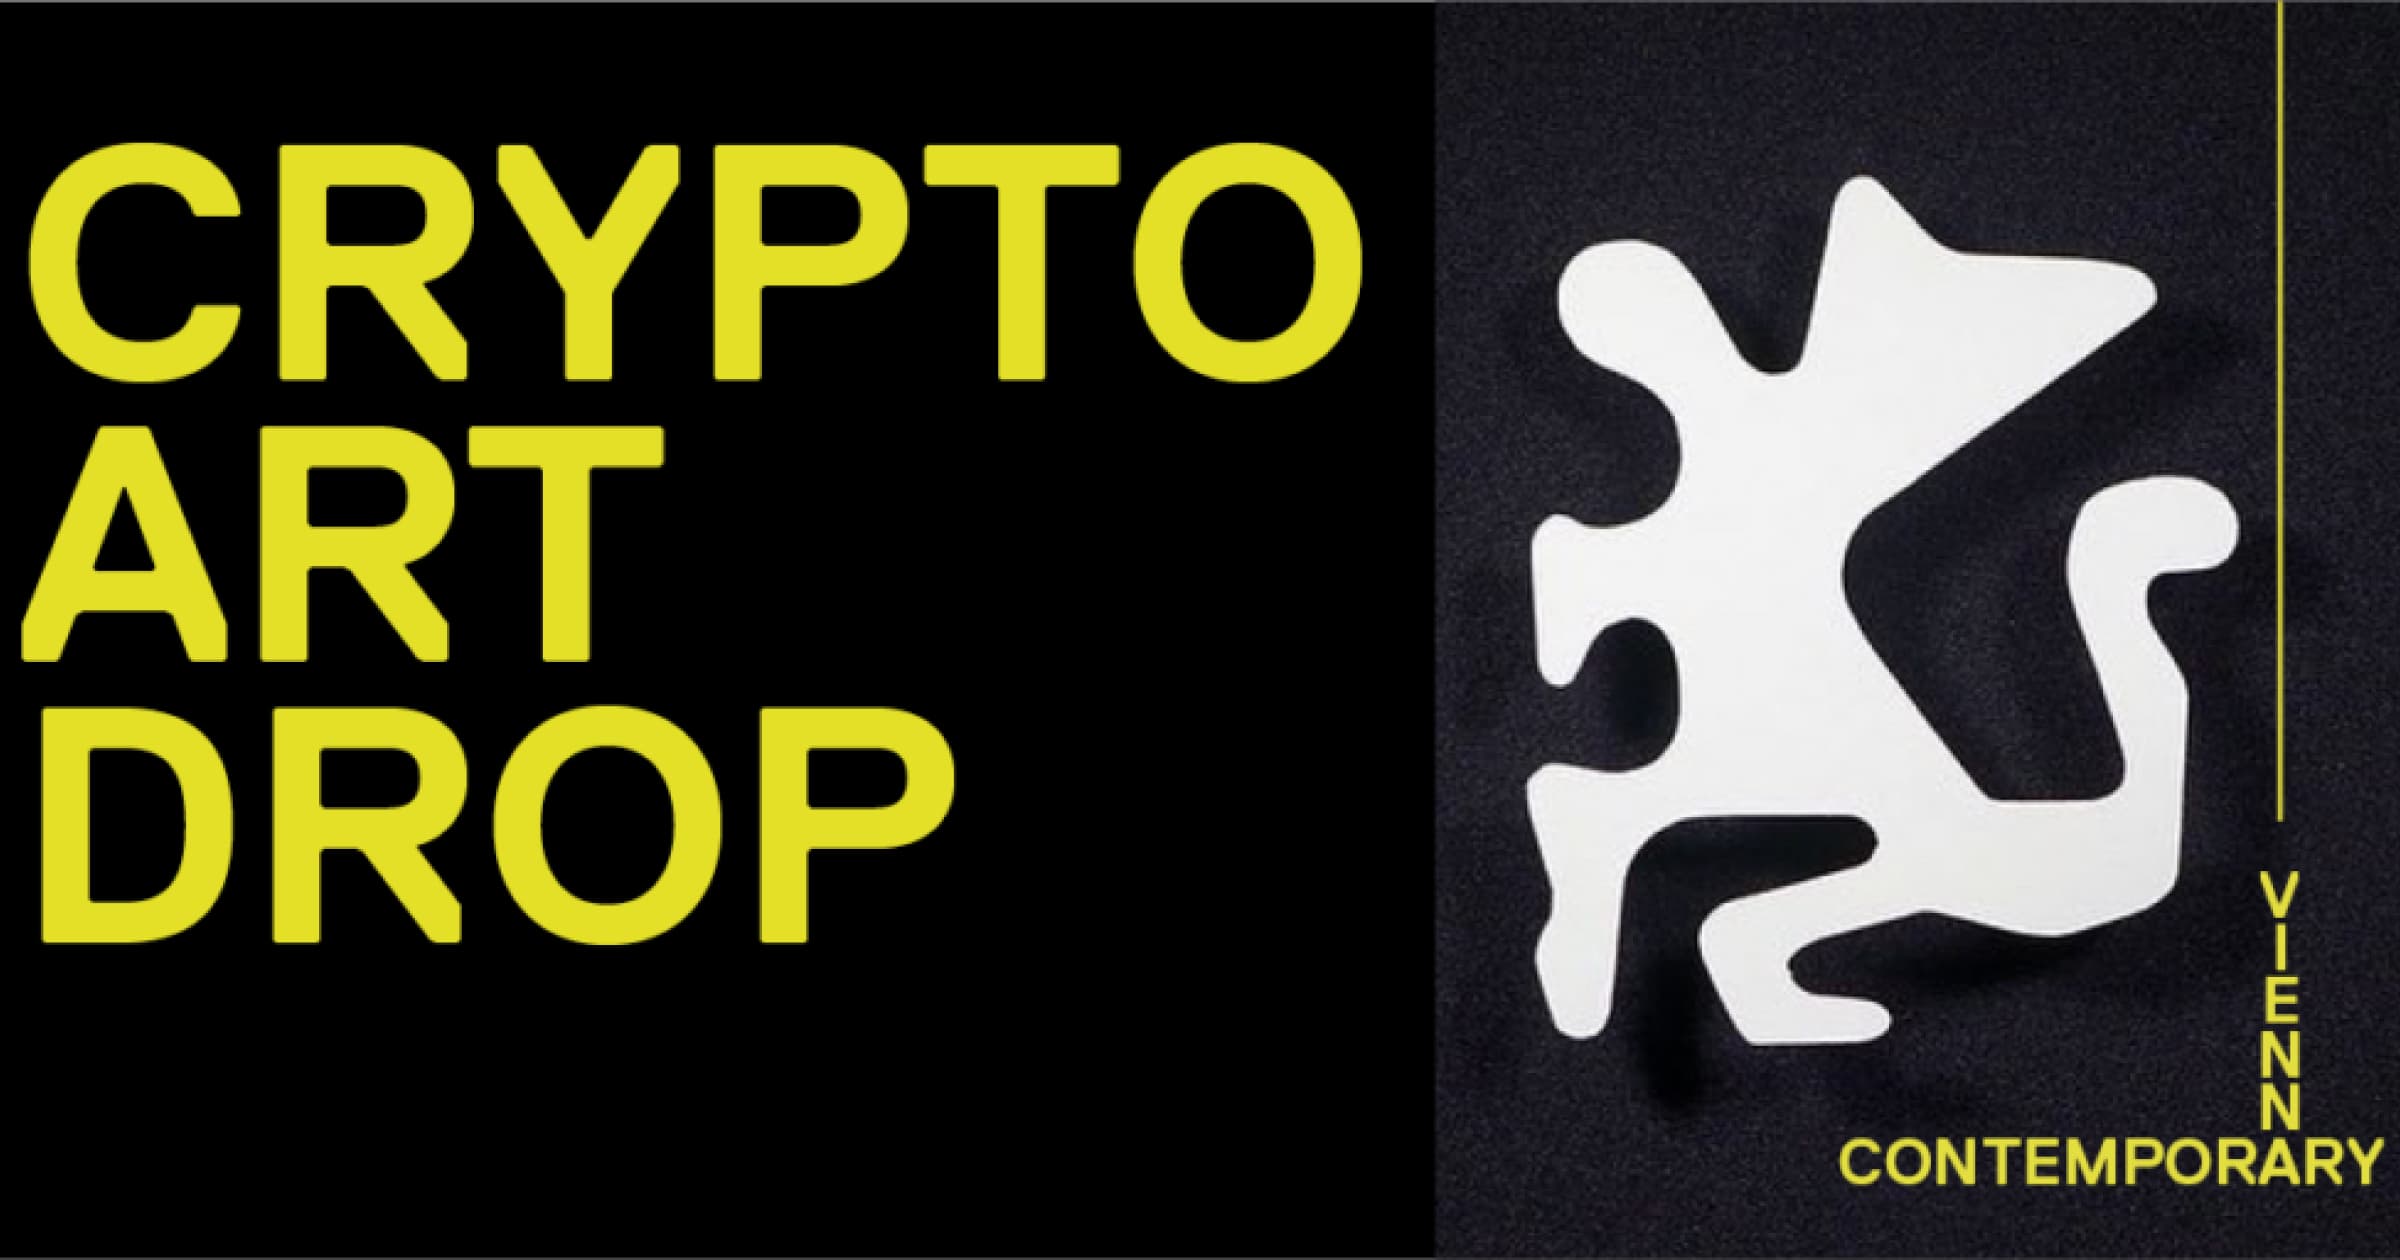 9 вересня в рамках Vienna Contemporary стартував аукціон Crypto Art Drop для підтримки української мистецької спільноти у форматі NFT drop